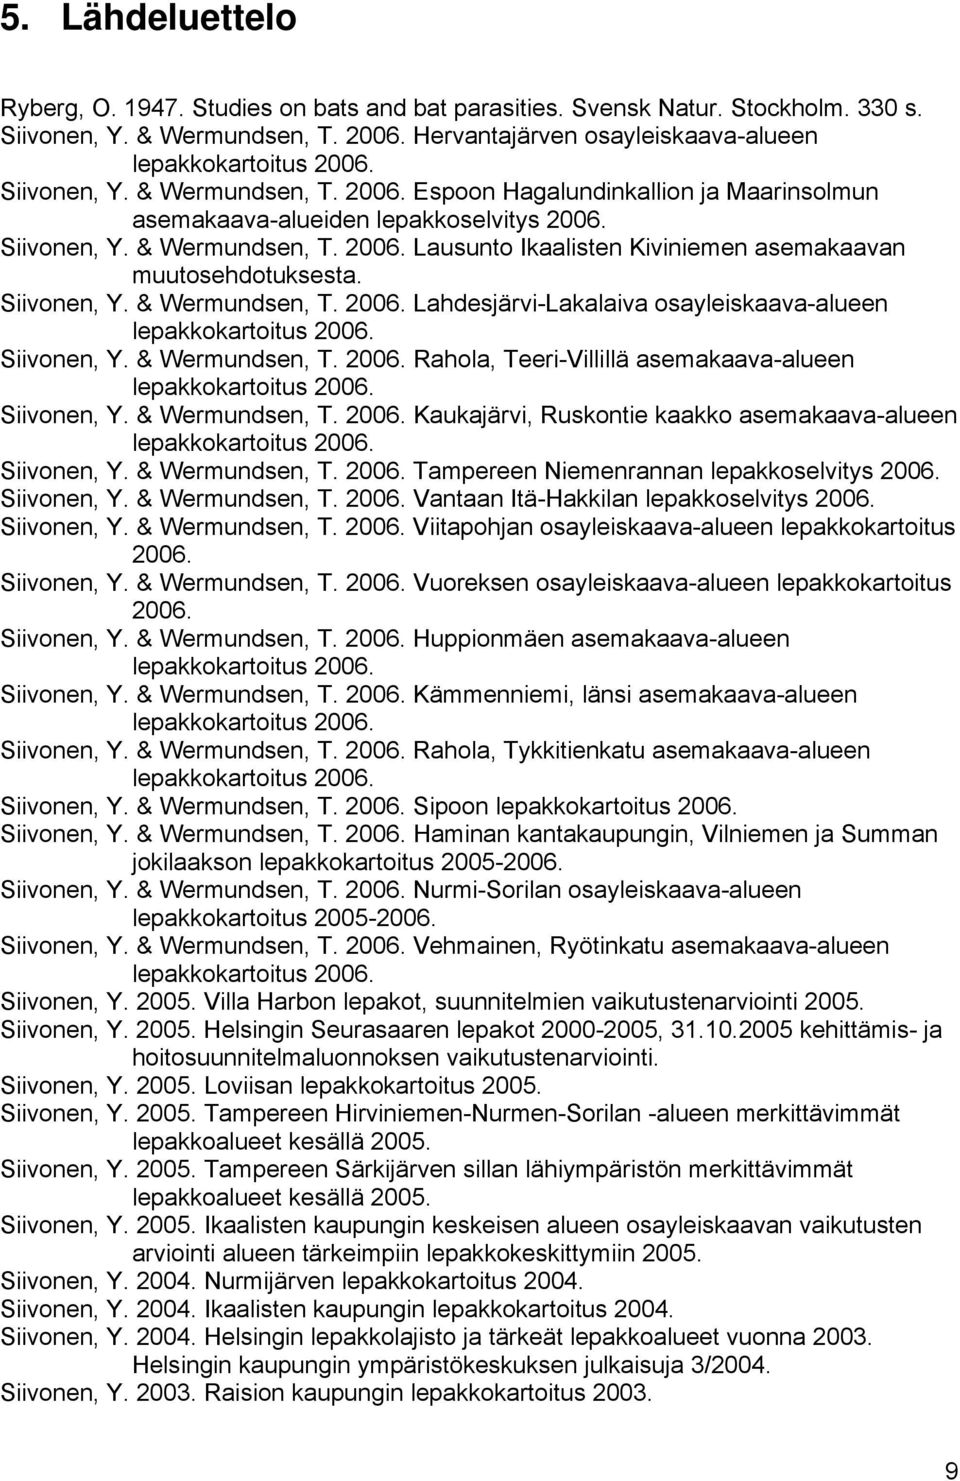 Siivonen, Y. & Wermundsen, T. 2006. Lahdesjärvi-Lakalaiva osayleiskaava-alueen Siivonen, Y. & Wermundsen, T. 2006. Rahola, Teeri-Villillä asemakaava-alueen Siivonen, Y. & Wermundsen, T. 2006. Kaukajärvi, Ruskontie kaakko asemakaava-alueen Siivonen, Y.